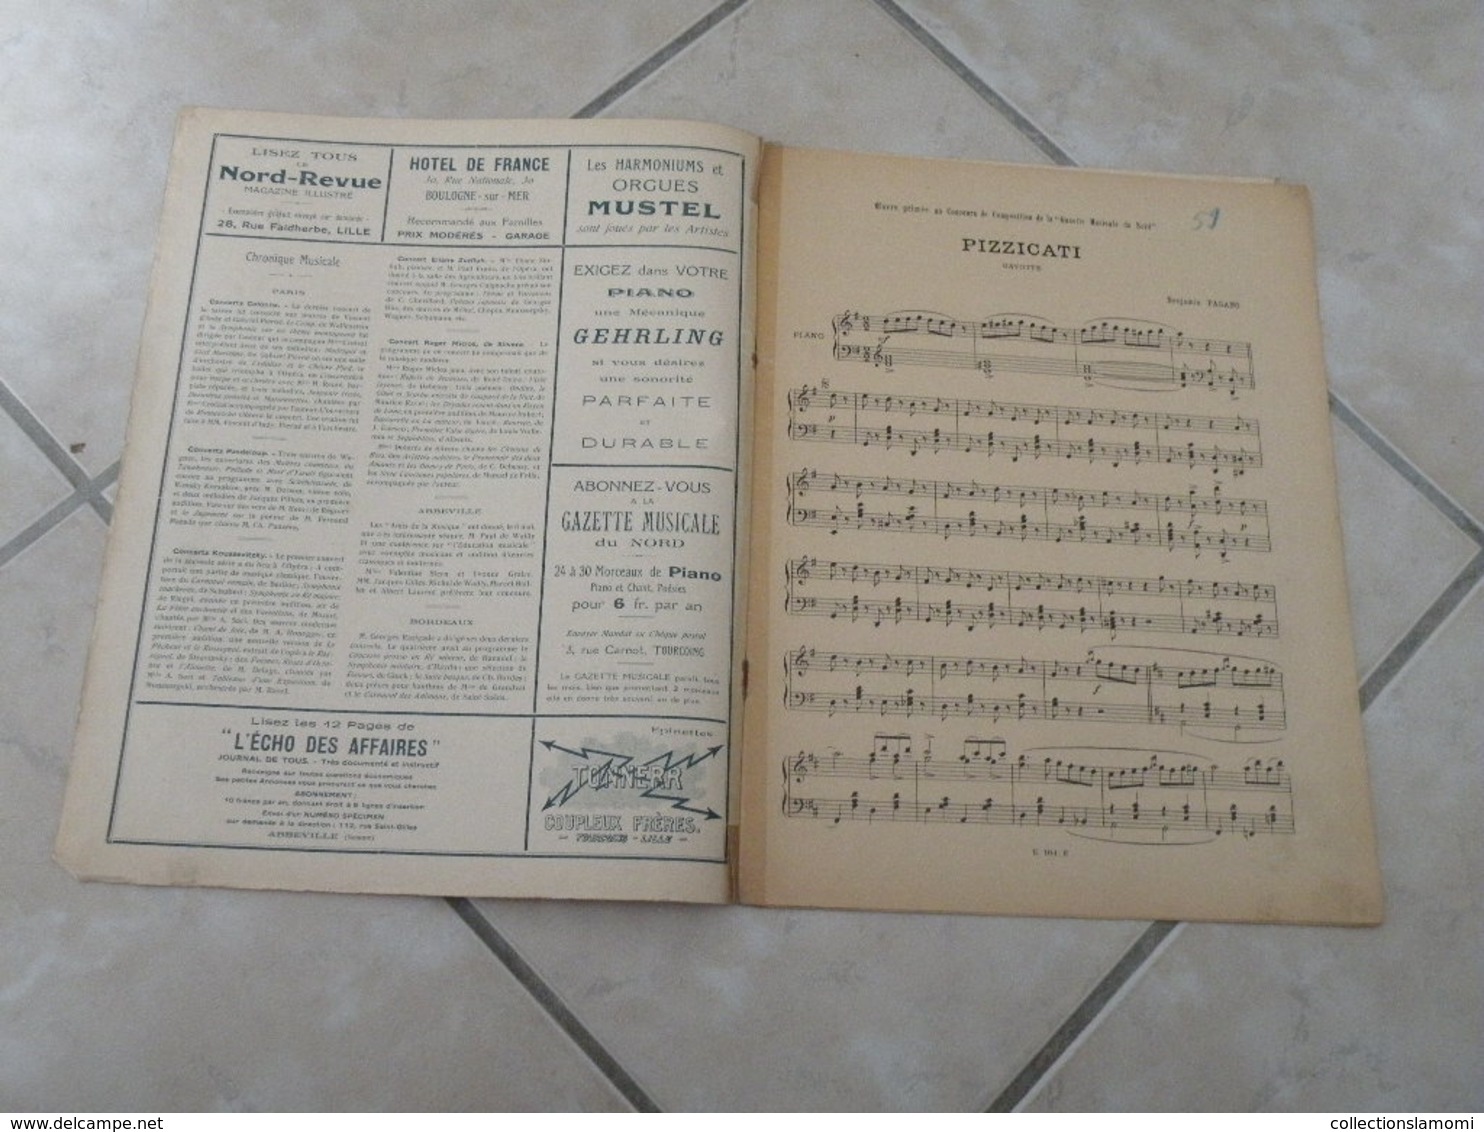 La Gazette Musical Du Nord -(Pizzicati, Pour Un Baiser & Sur Le Rhône) - Partition (Piano) Juillet 1923 - Strumenti A Tastiera